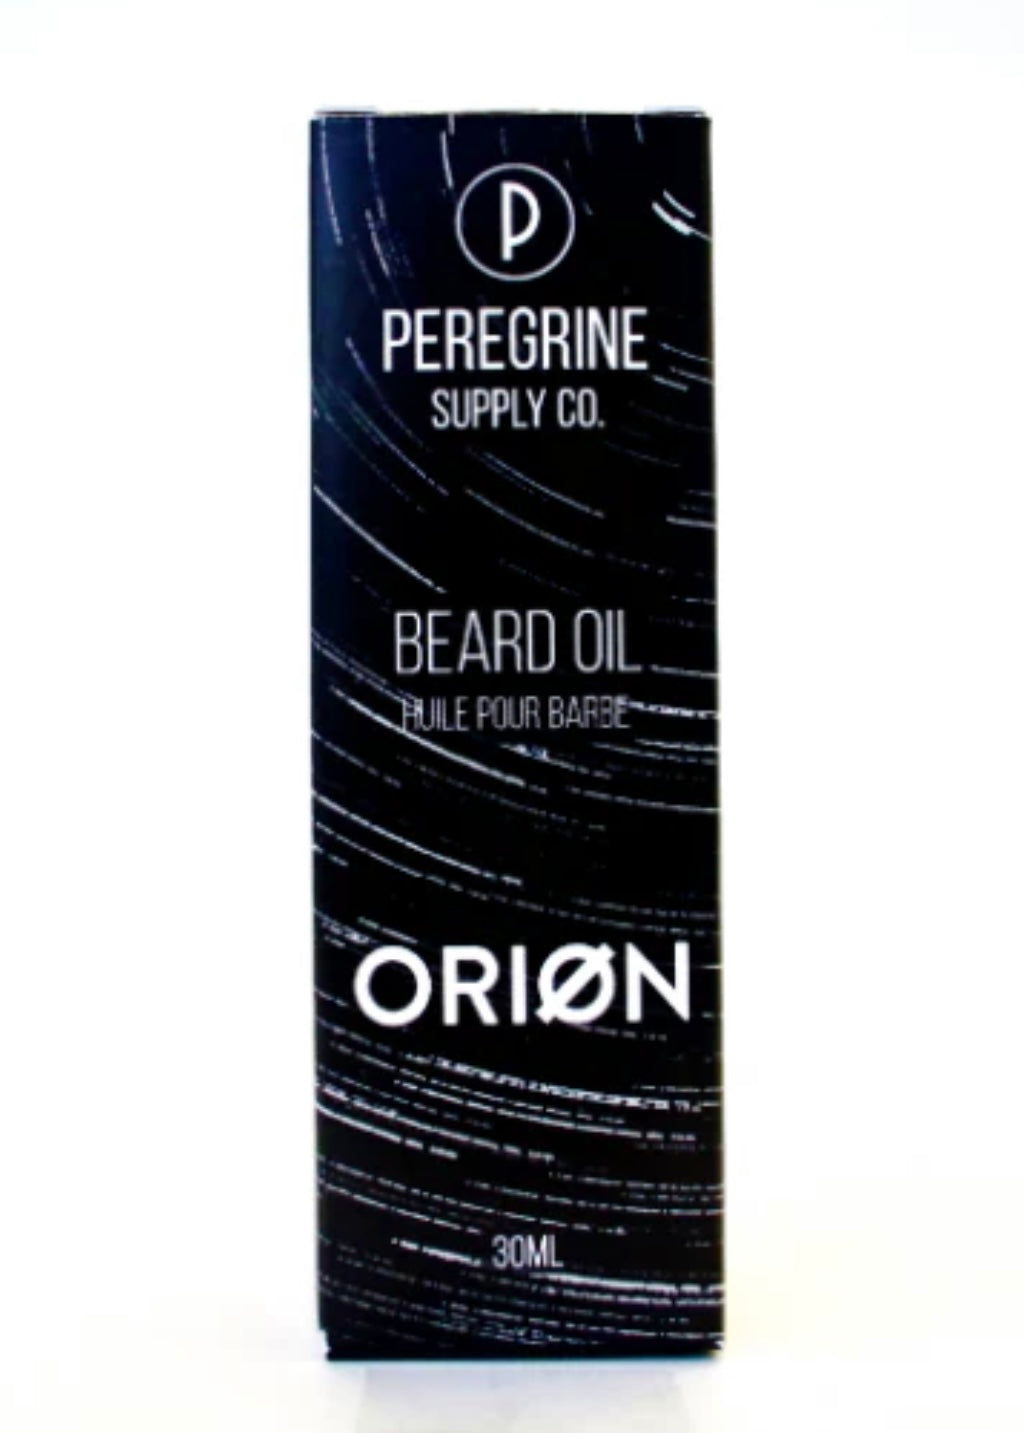 Orion Beard Oil